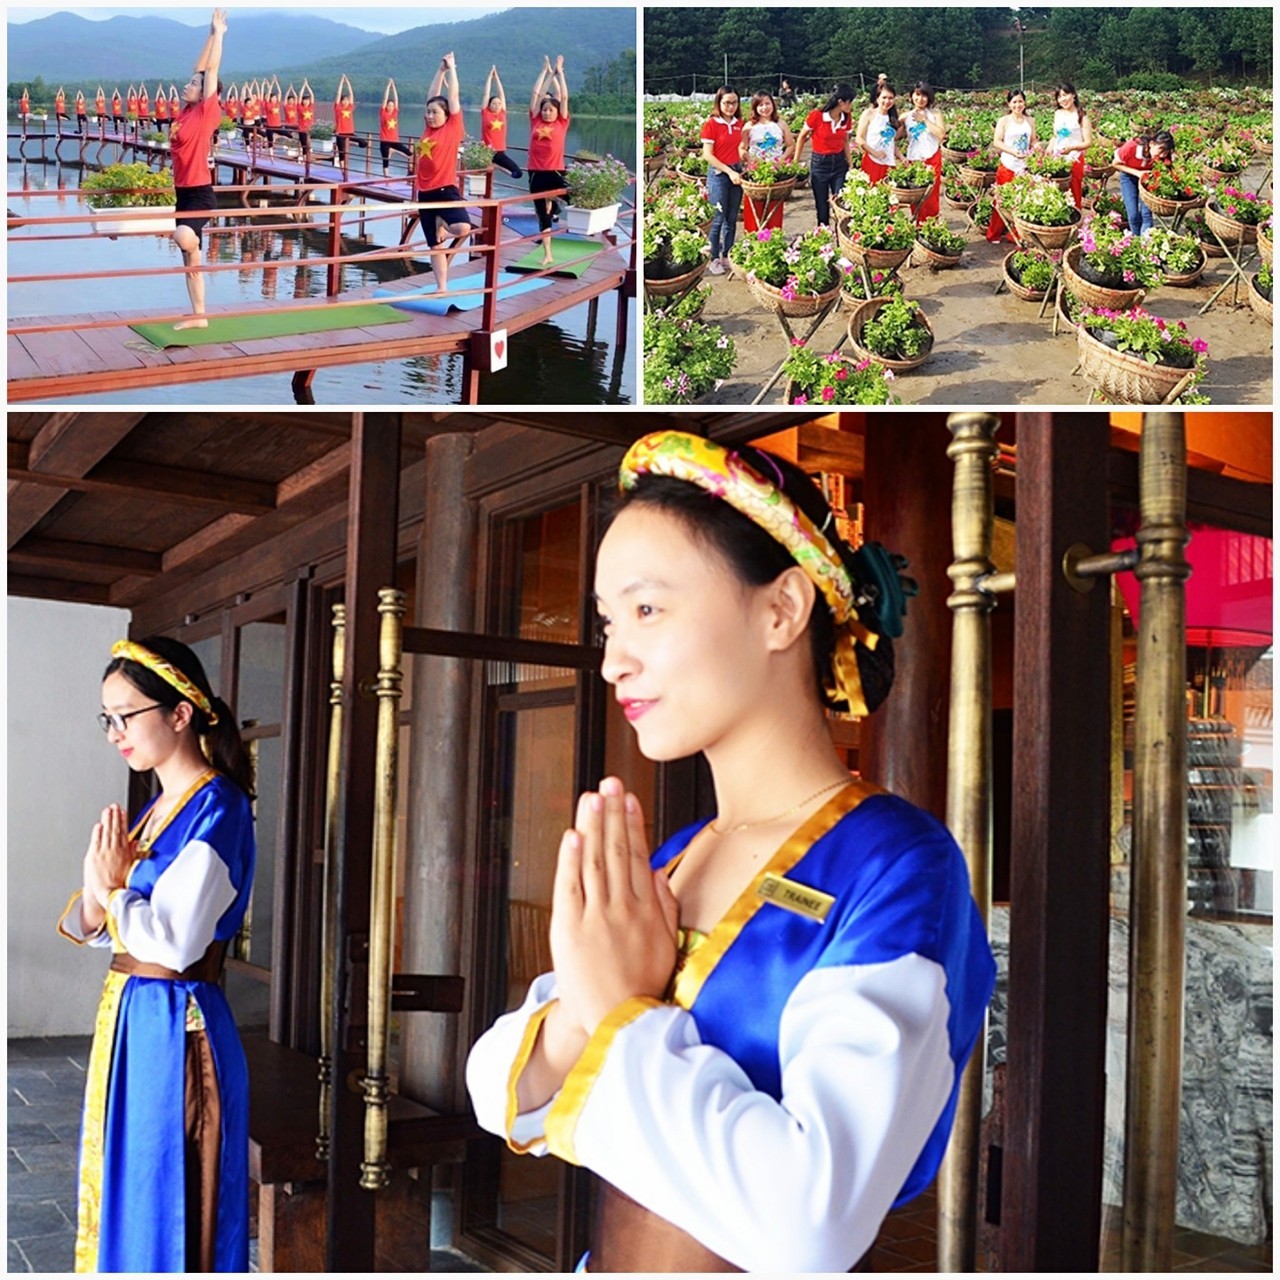 Trong năm các điểm du lịch Yên Tử, hồ Yên Trung,Thung lũng hoa Yên Tử thay đổi cả về chất và lượng